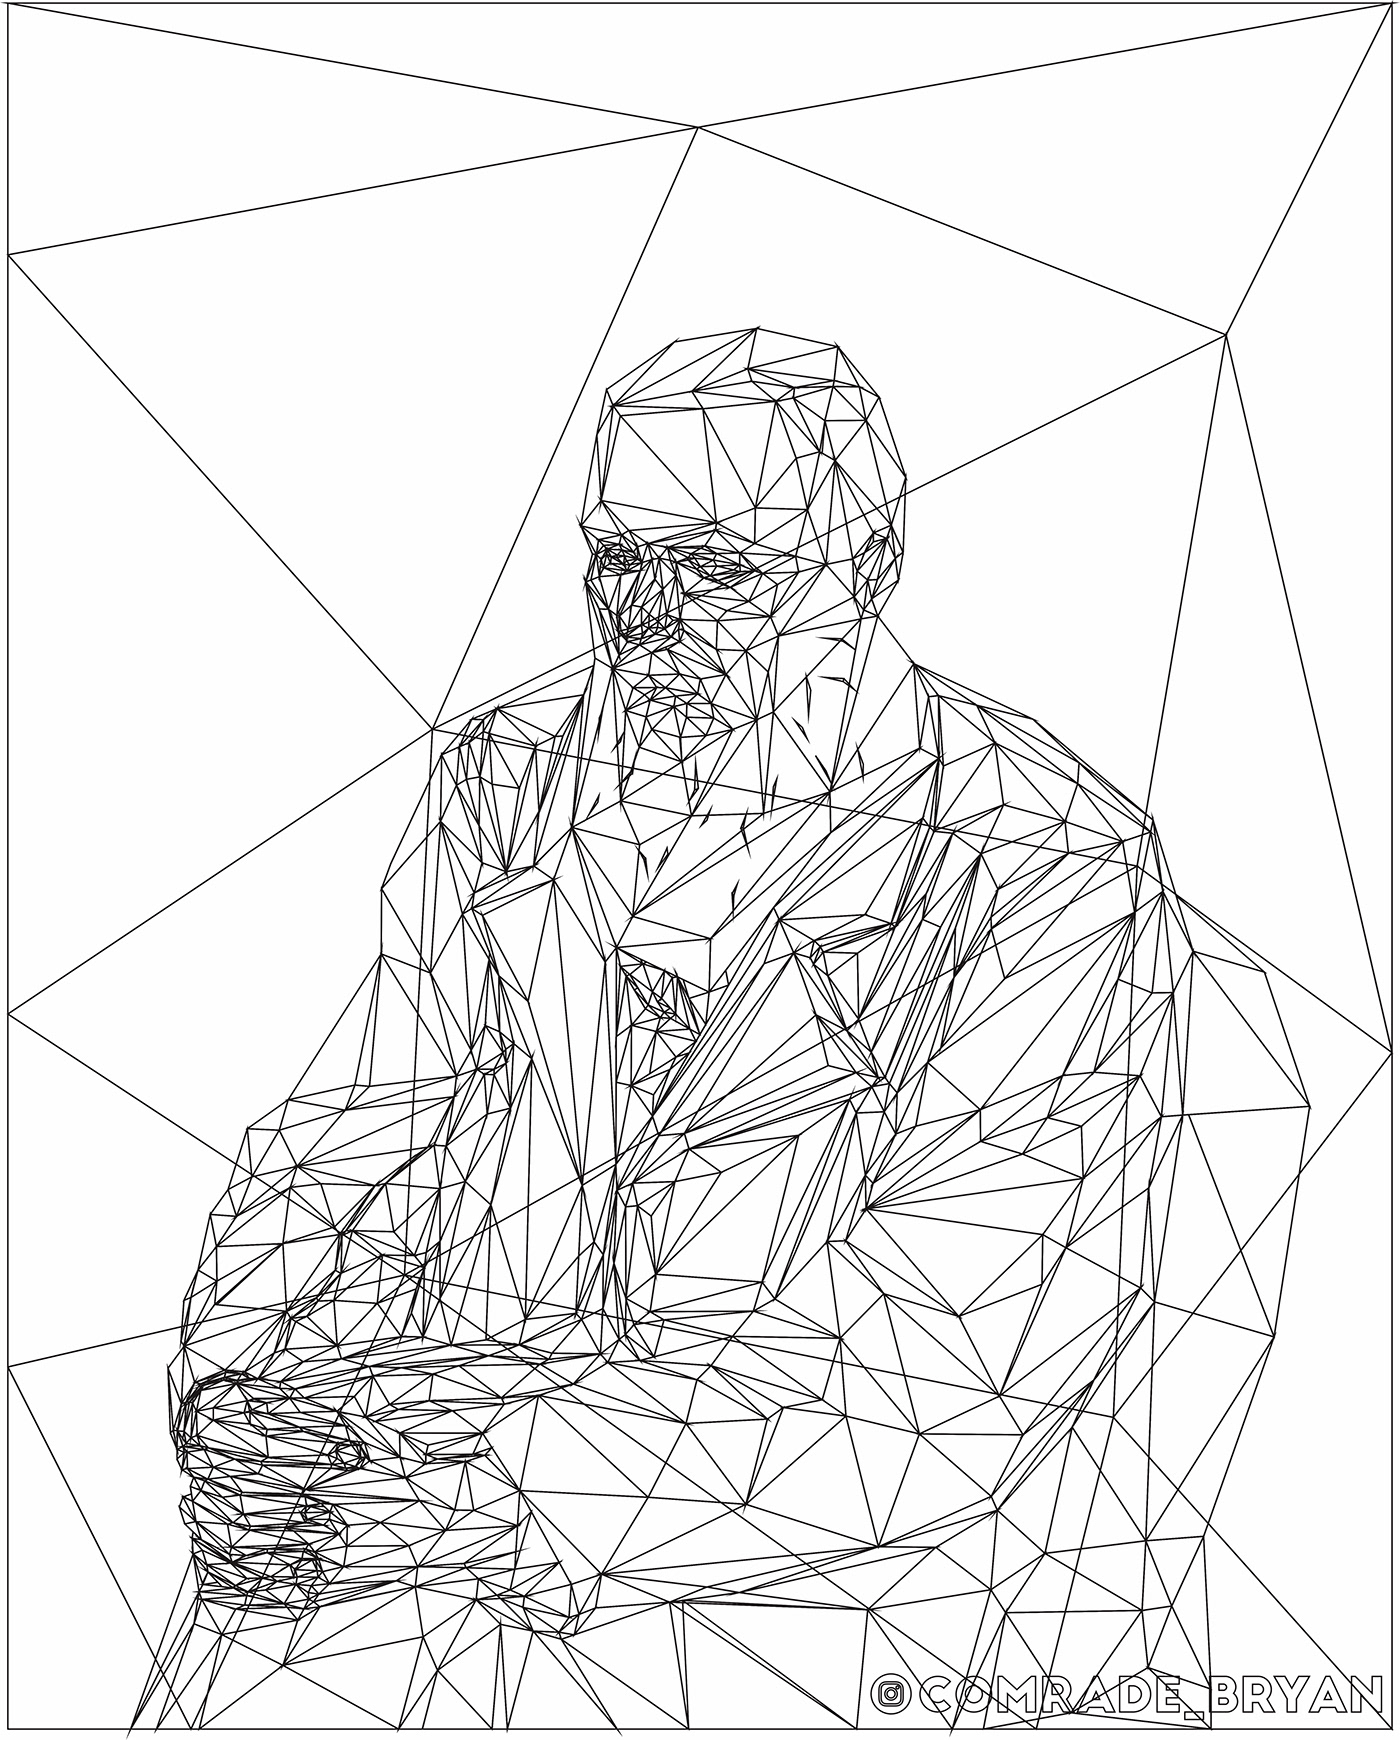 2dlowpoly Dostoyevsky geometric lowpoly portrait Russia triangle